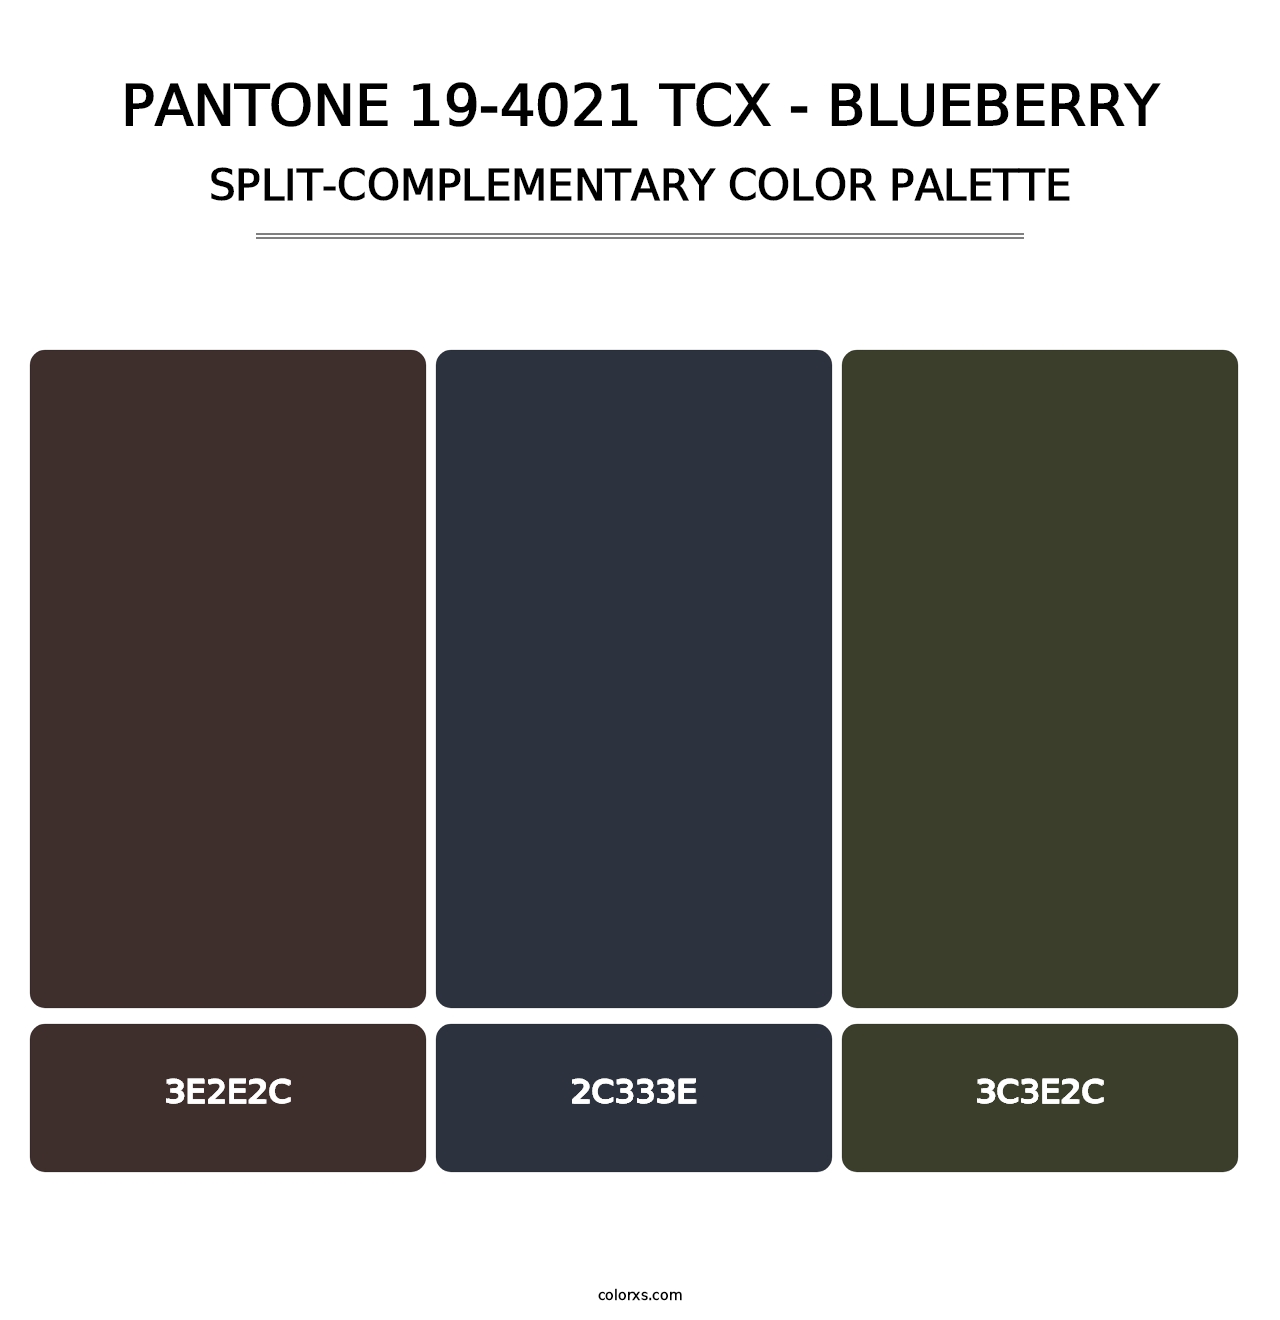 PANTONE 19-4021 TCX - Blueberry - Split-Complementary Color Palette